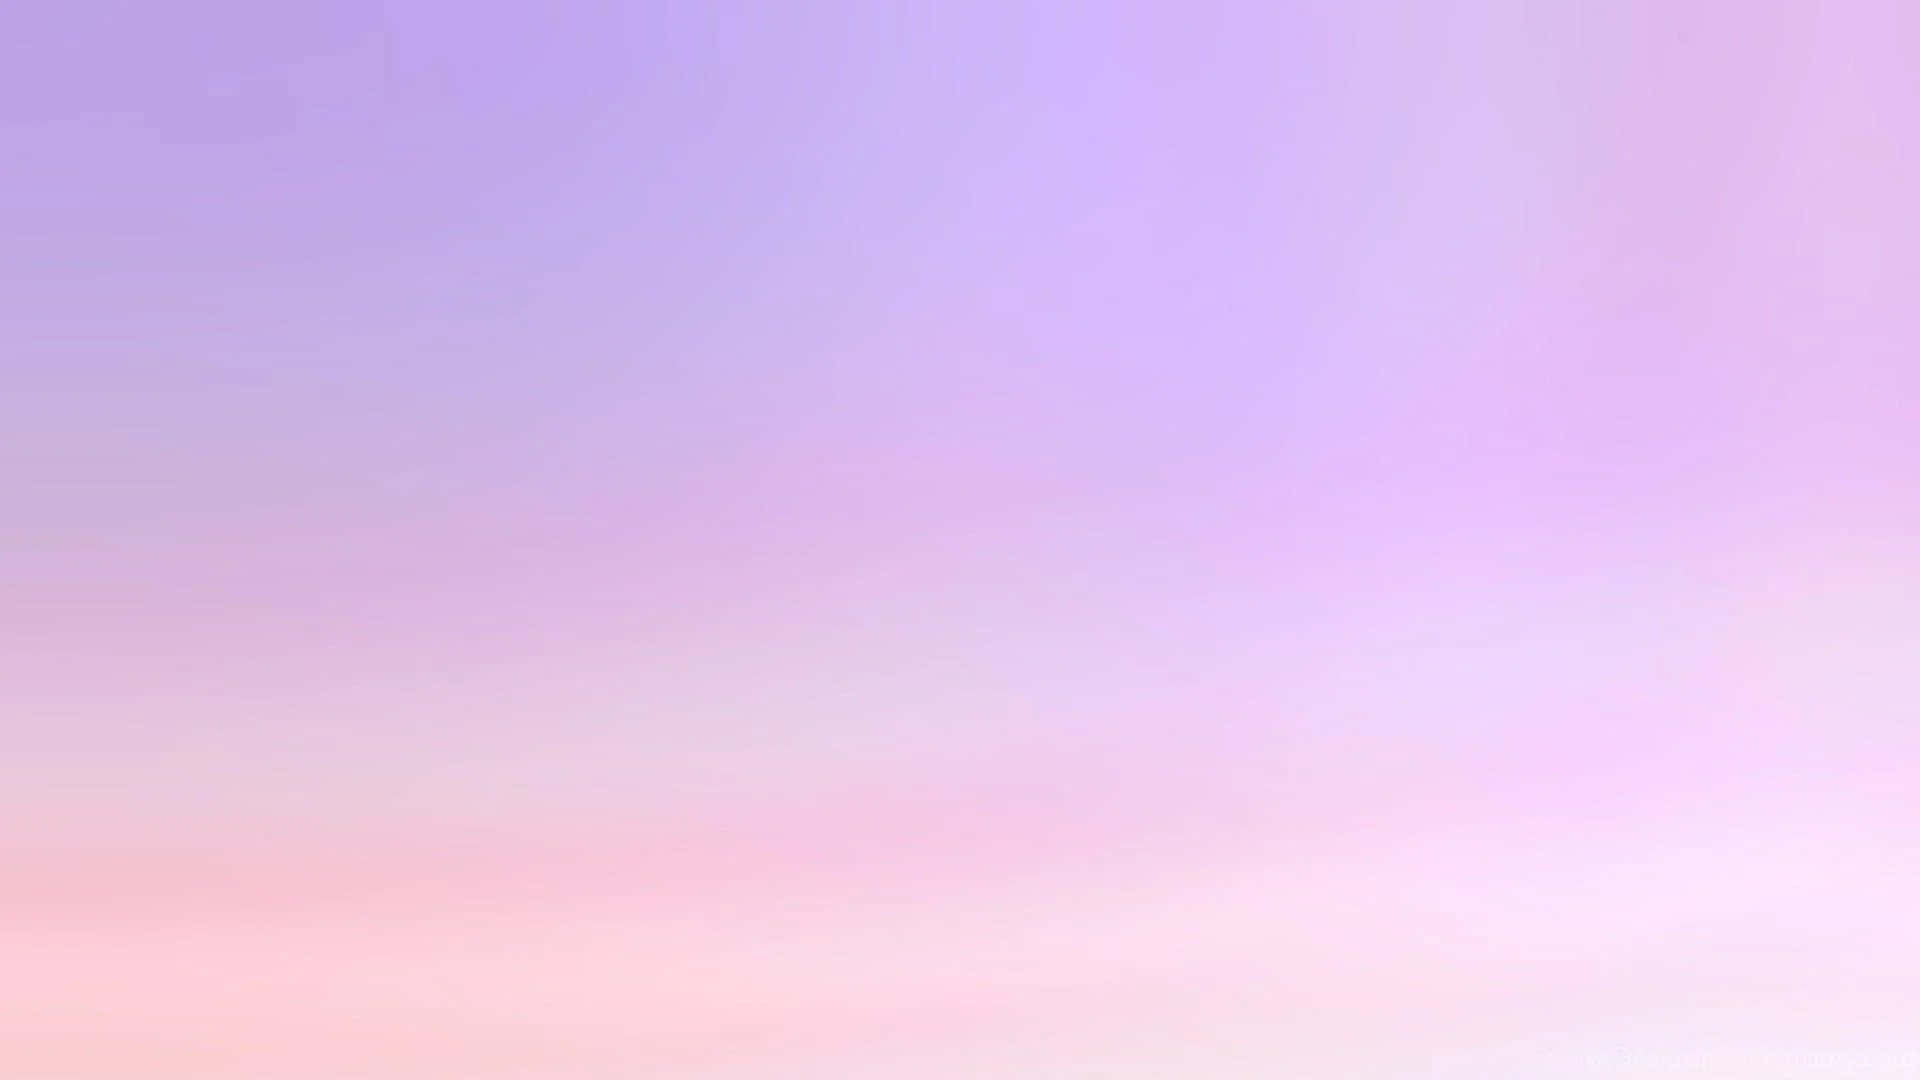 Rose Quartz And Serenity Purple Gradient Background